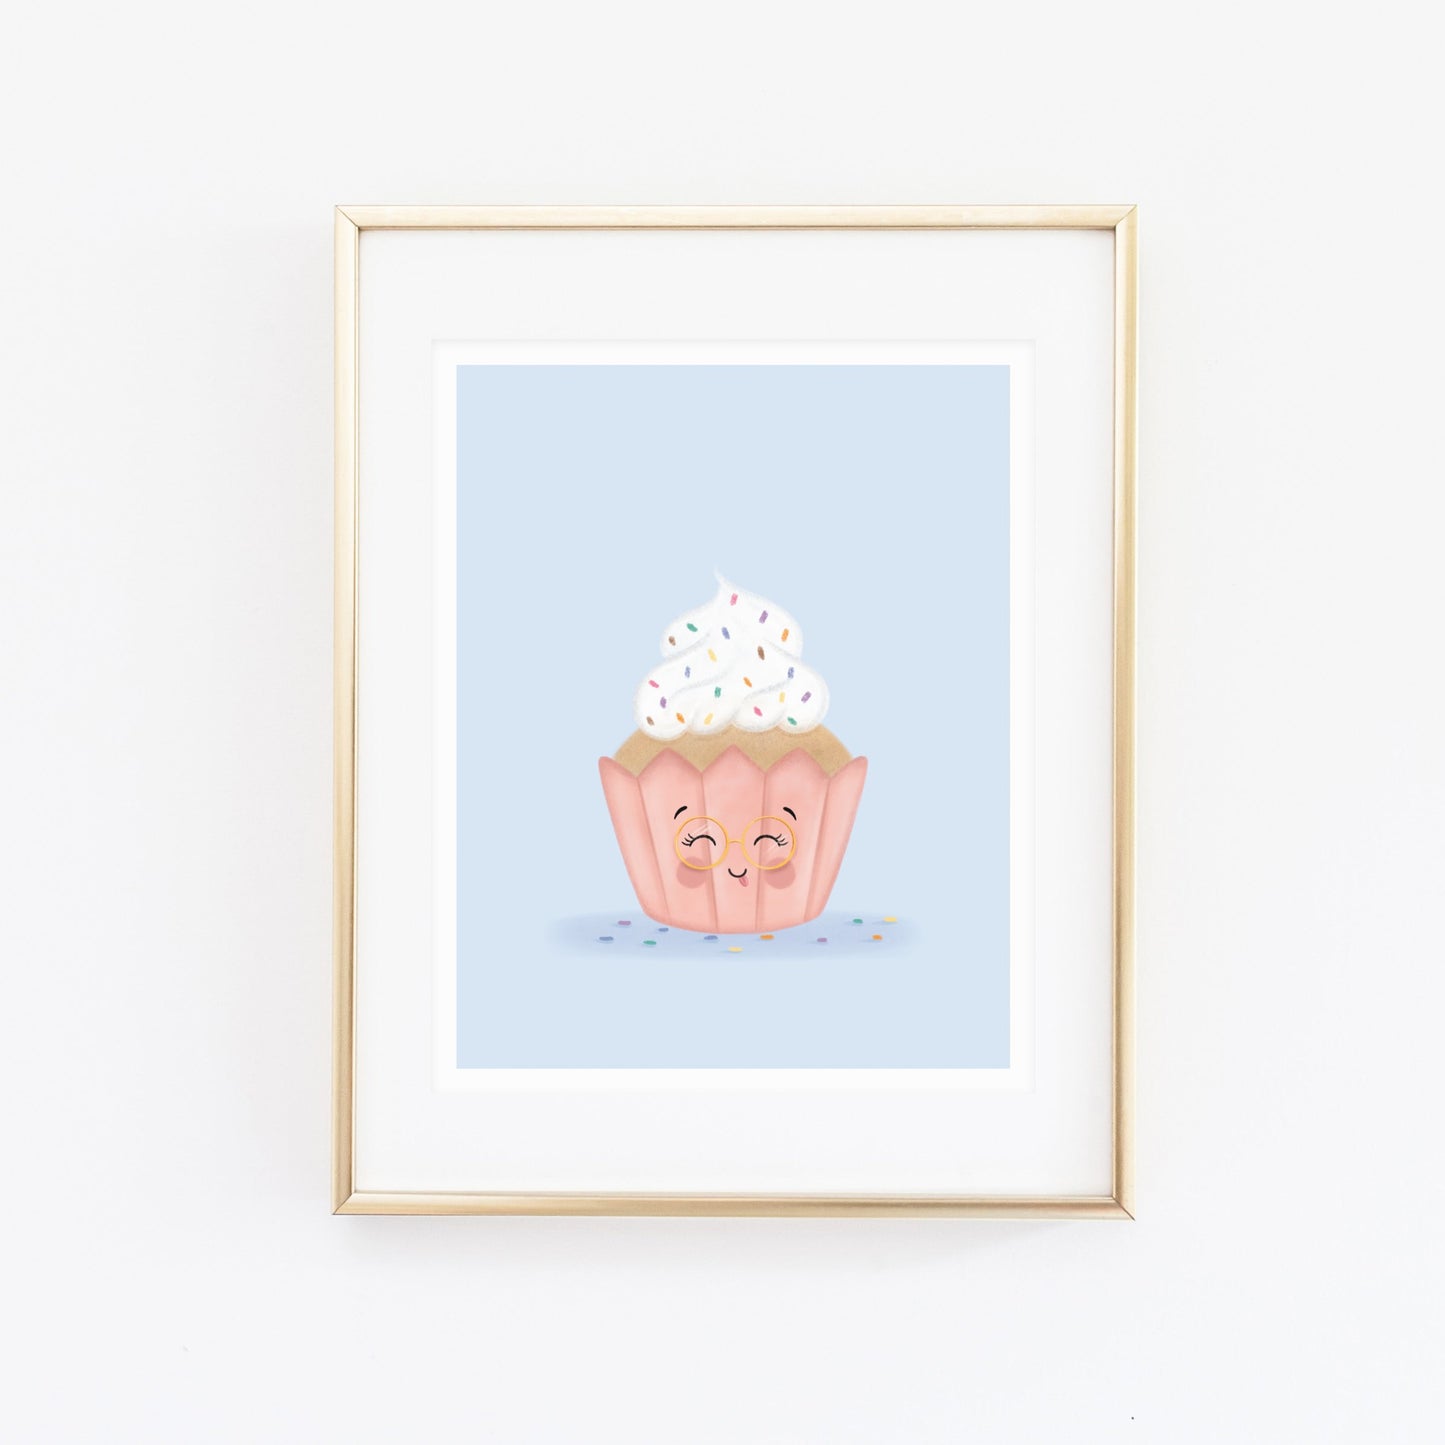 Cupcake Art Print